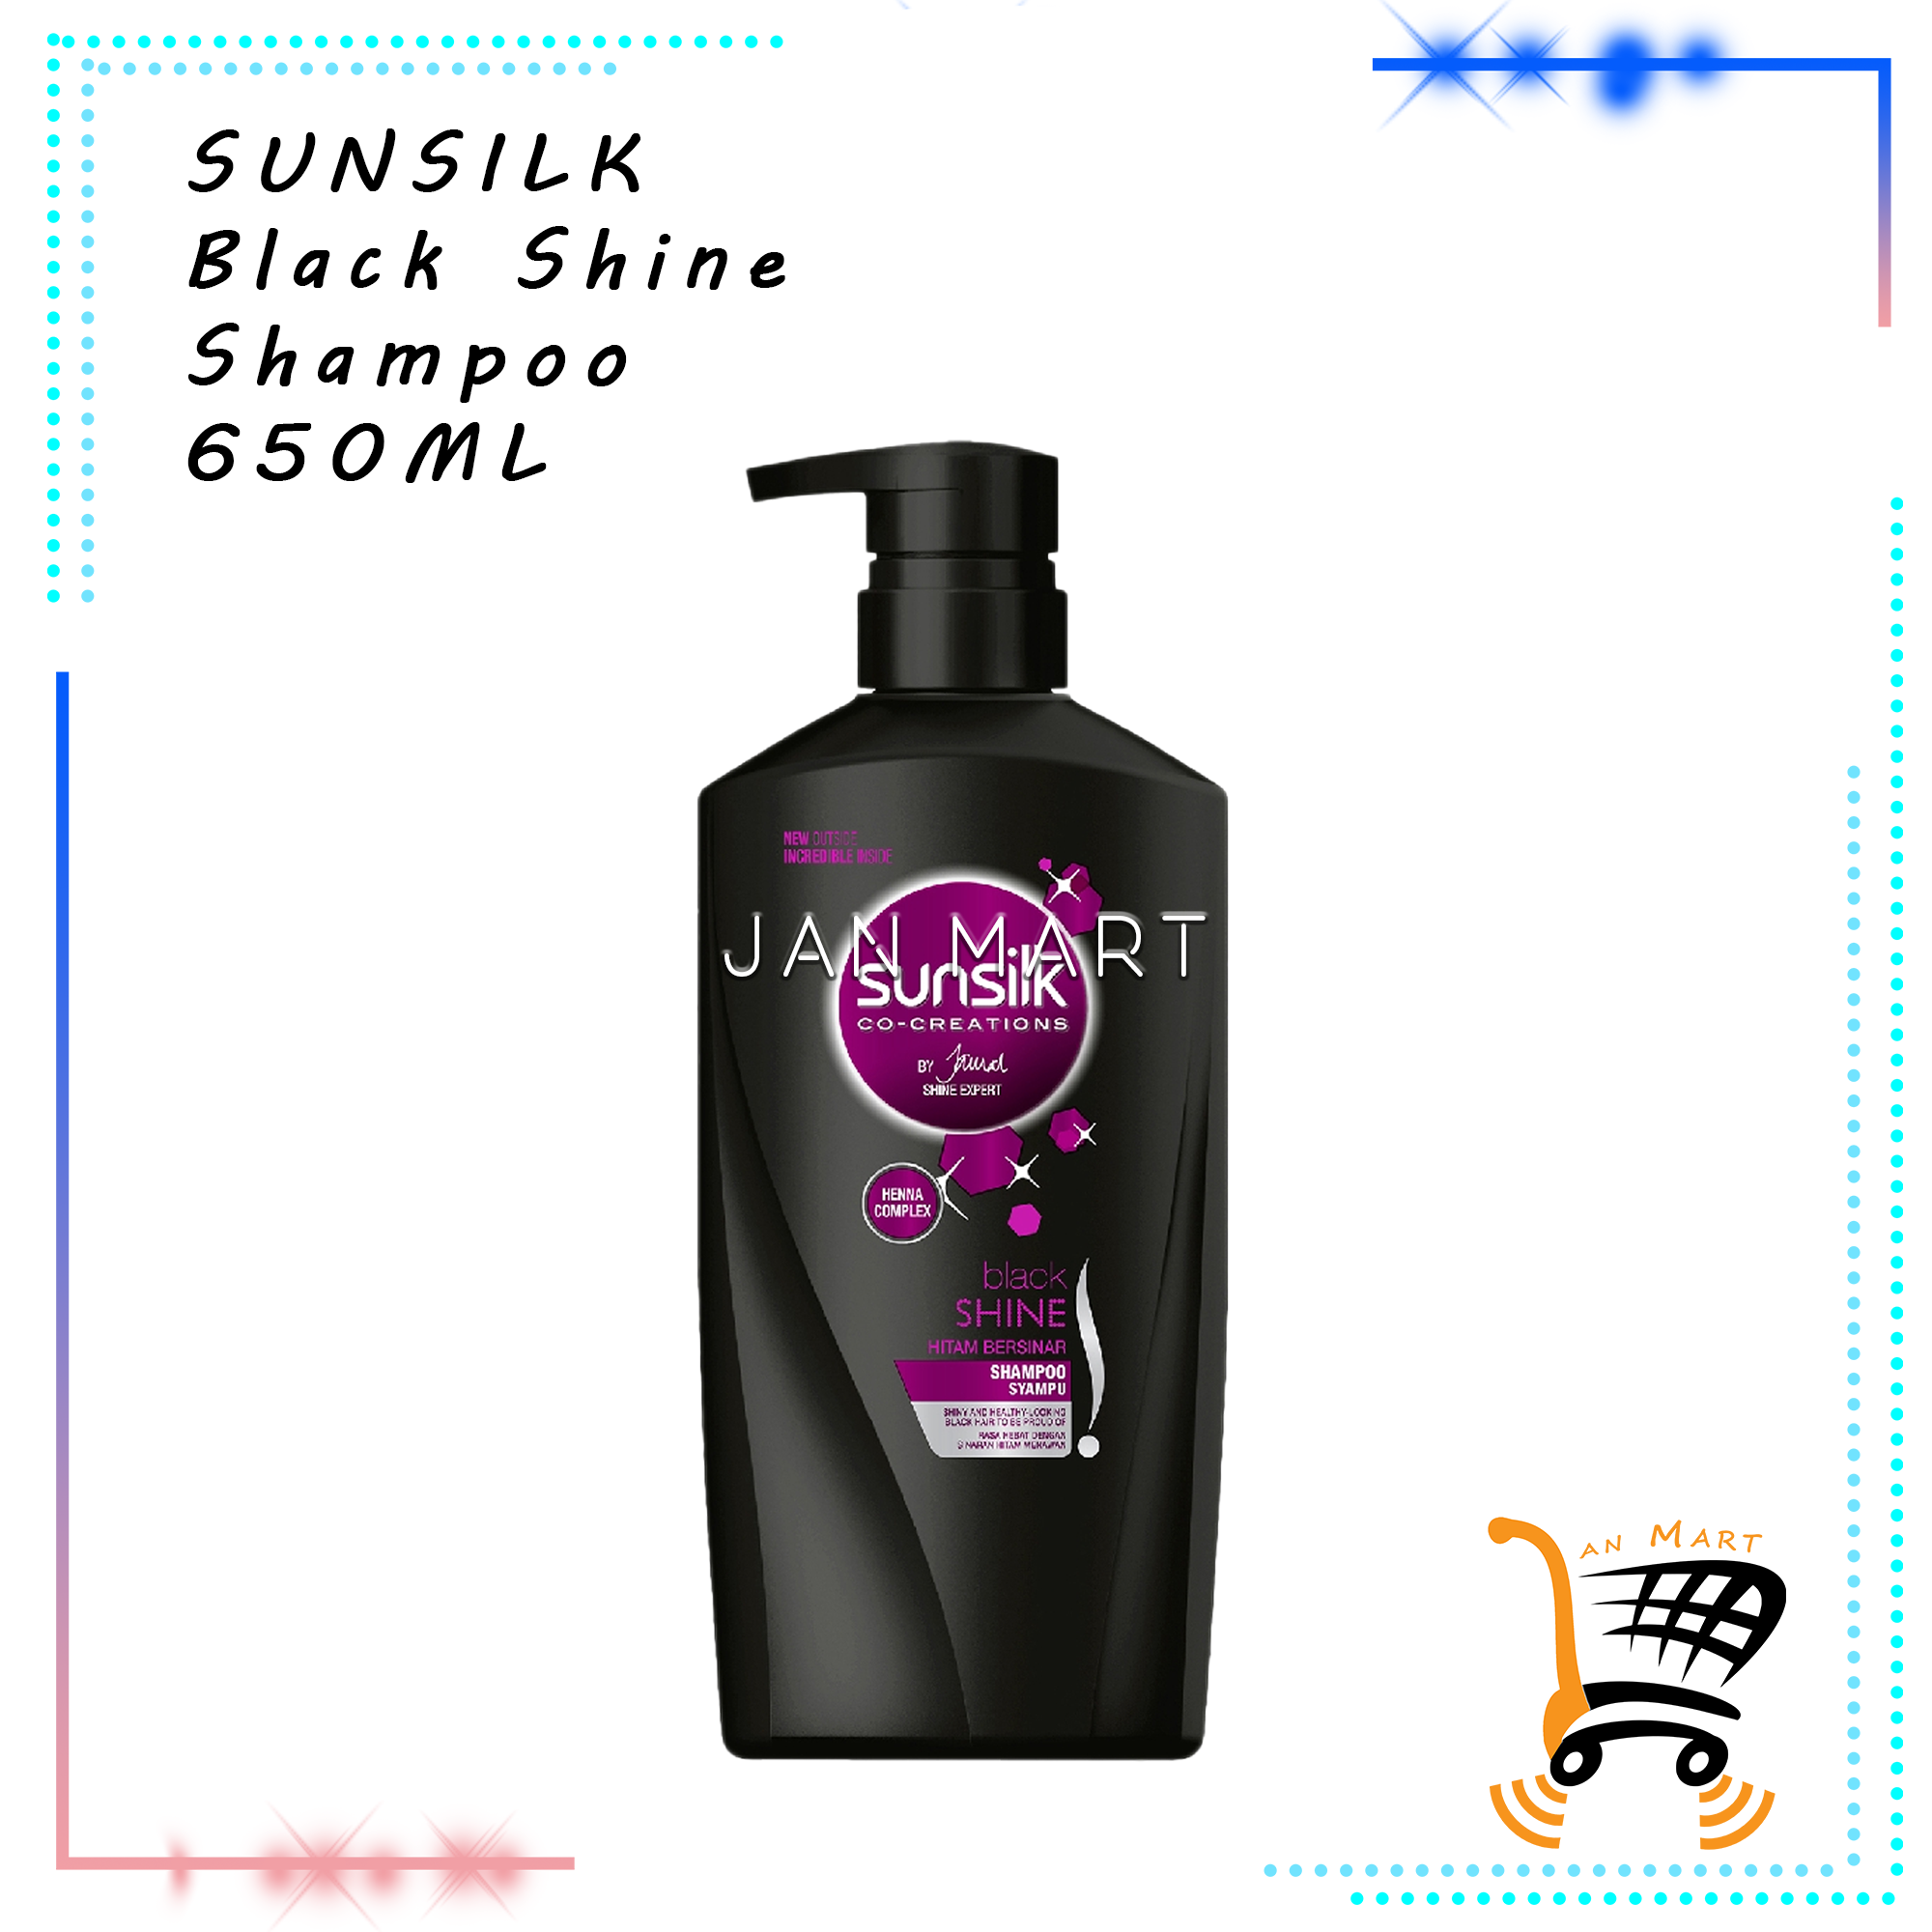 SUNSILK Shampoo 650ML